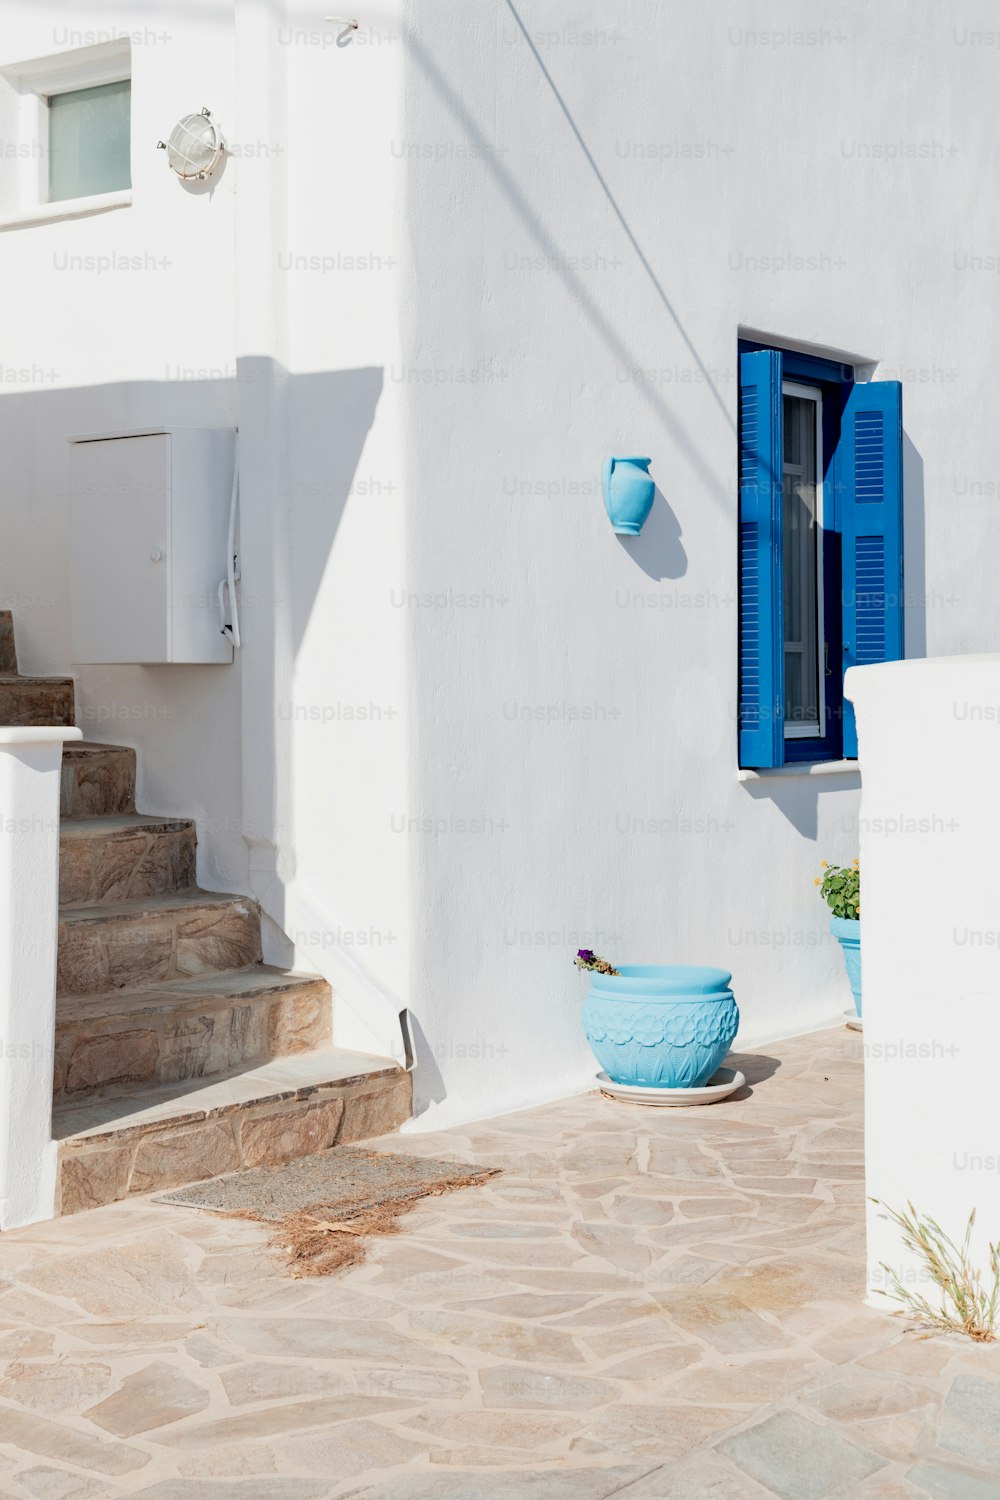 Ein weißes Haus mit blauen Fensterläden und einer blauen Schale